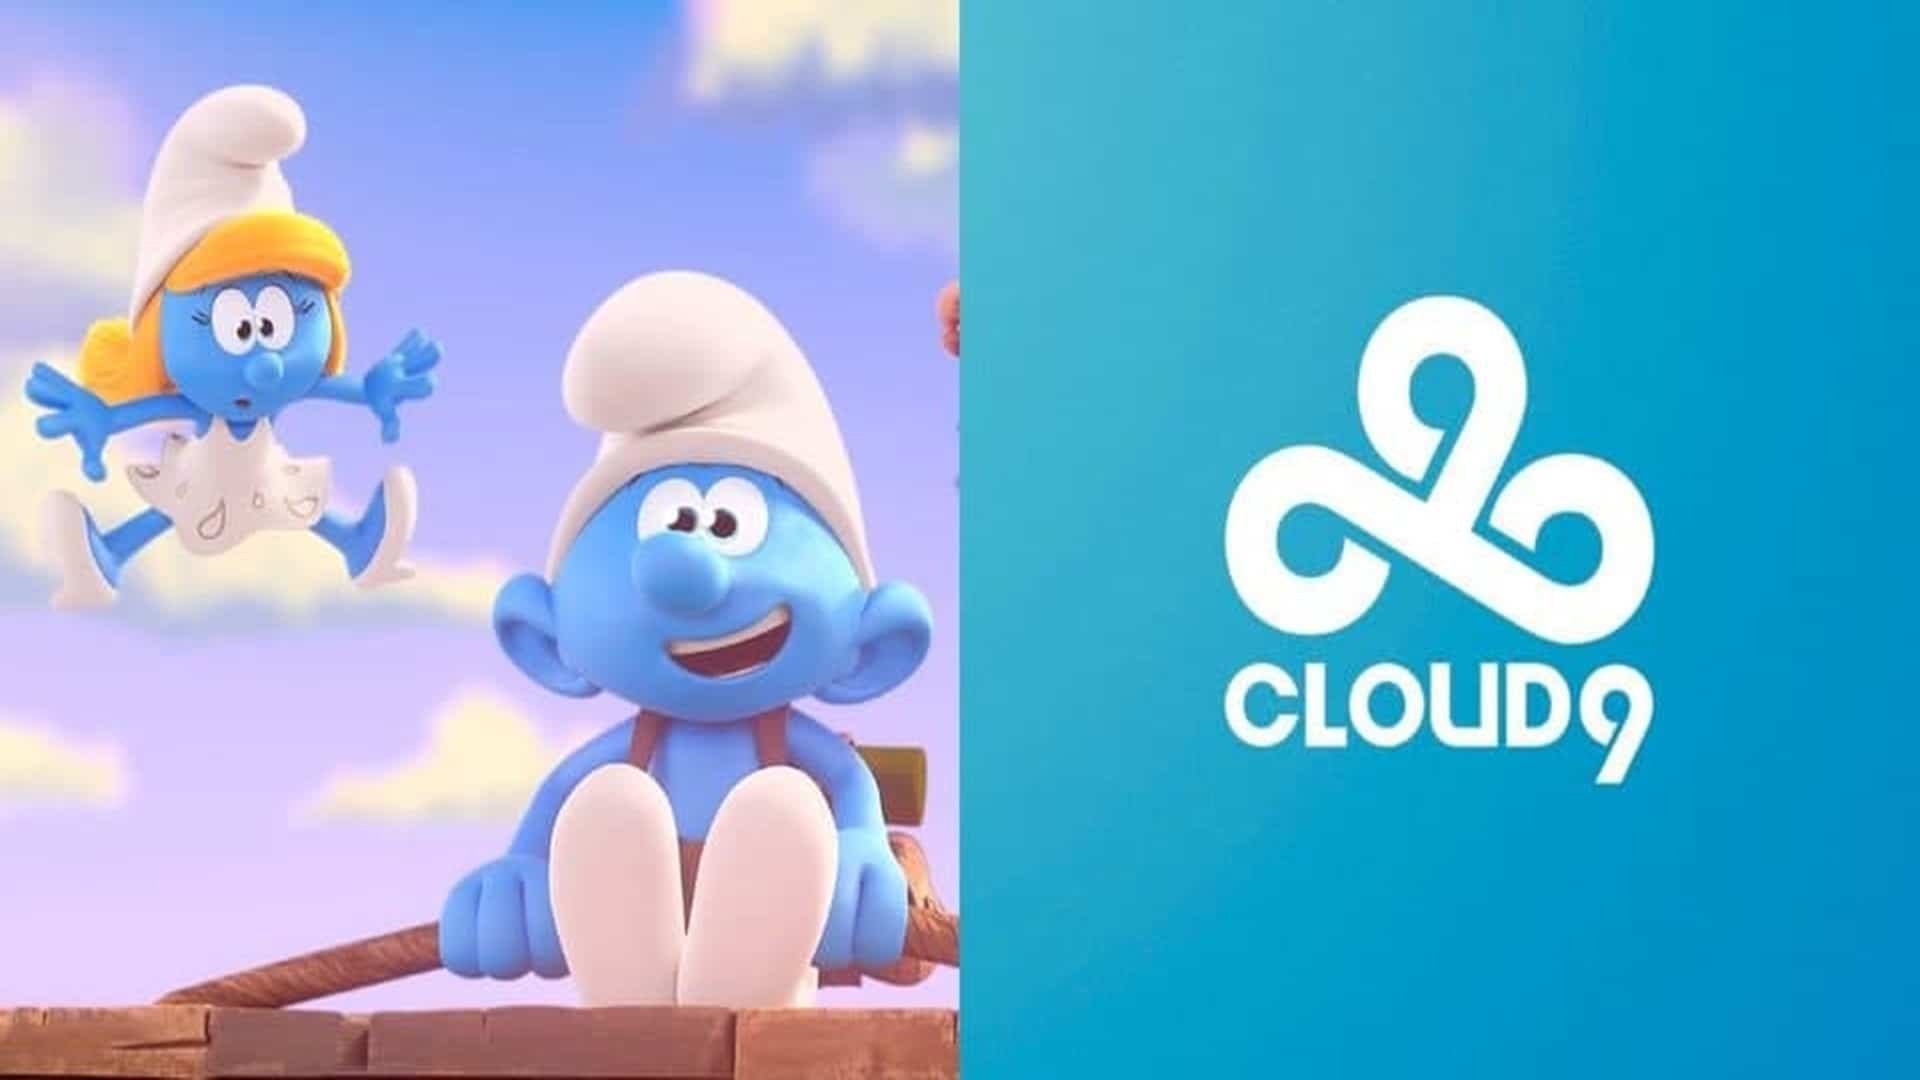 Cloud9 anuncia colaboración con los pitufos, GamersRD